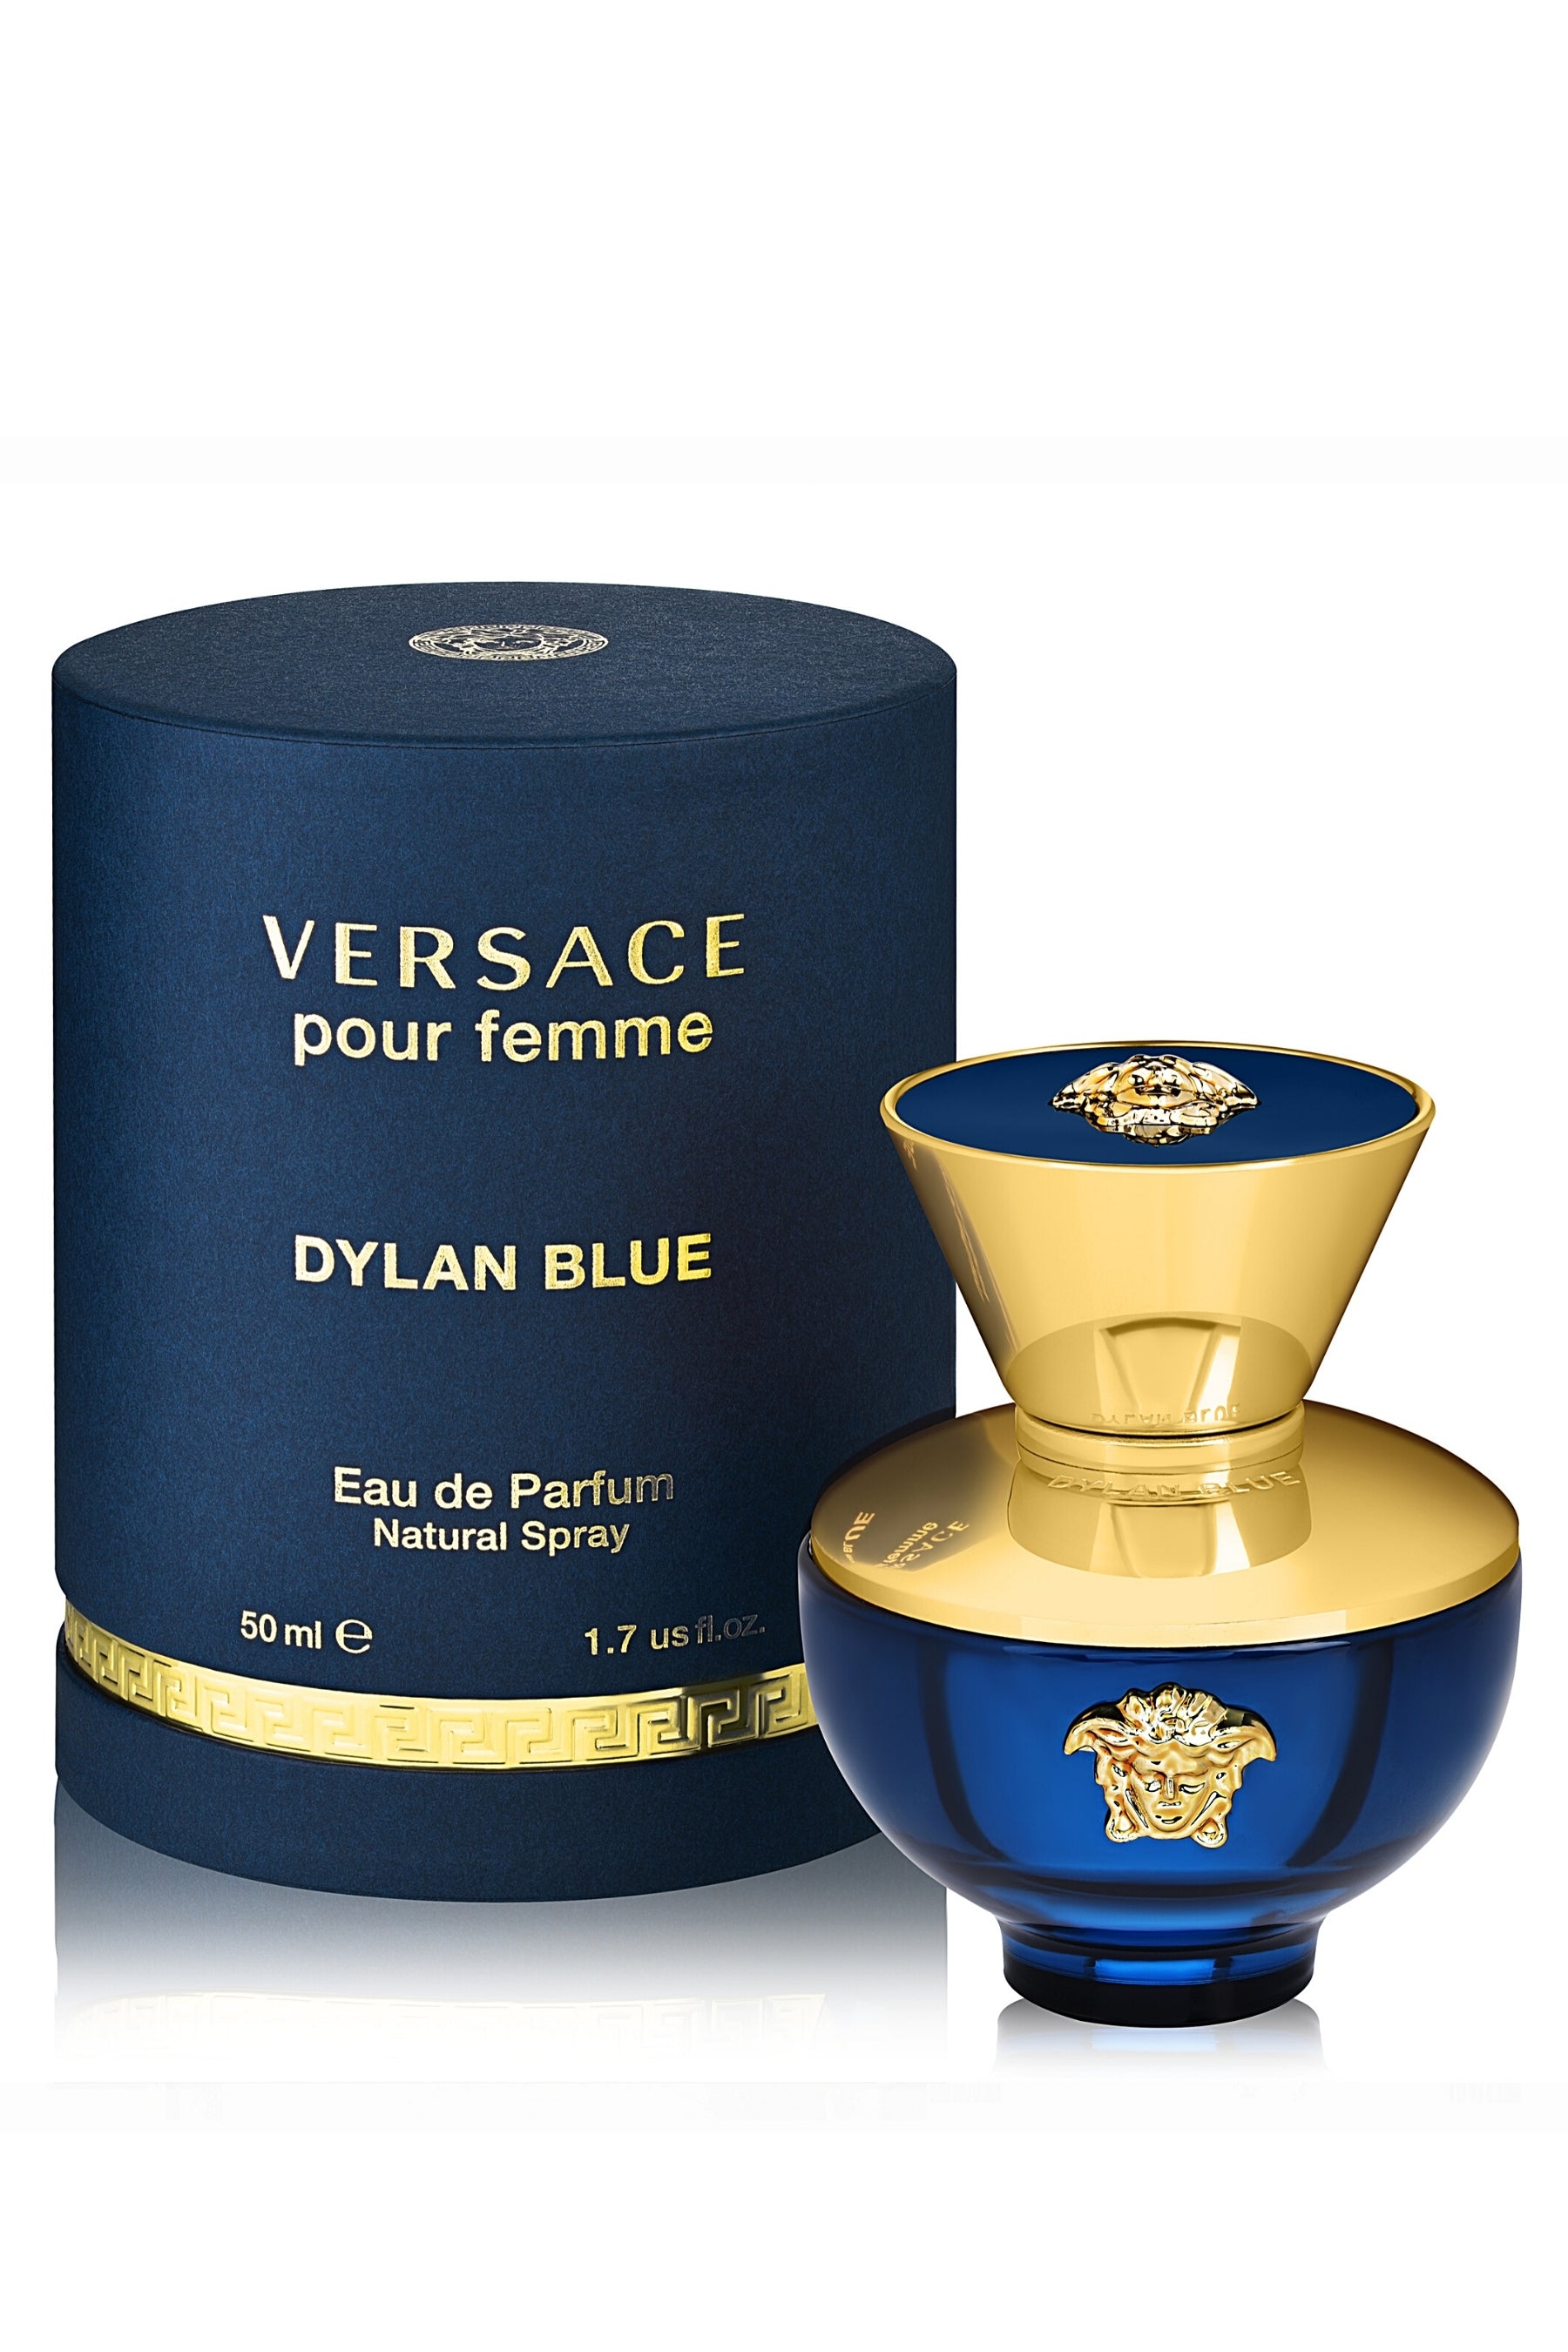 Versace Dylan Blue Eau de Toilette for Men (1.7 or 3.4 Oz)